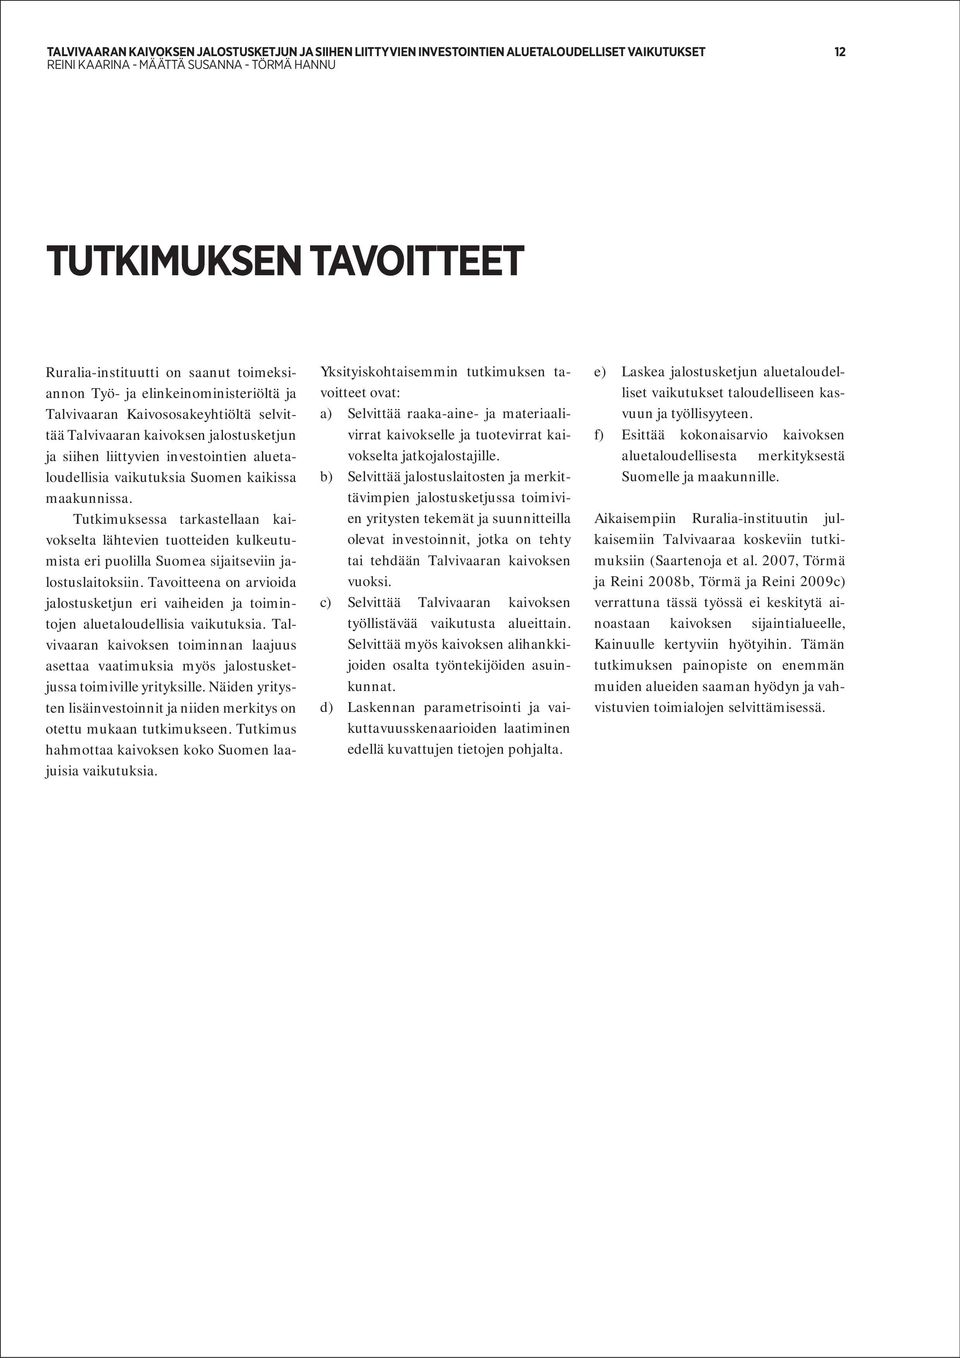 Tutkimuksessa tarkastellaan kaivokselta lähtevien tuotteiden kulkeutumista eri puolilla Suomea sijaitseviin jalostuslaitoksiin.